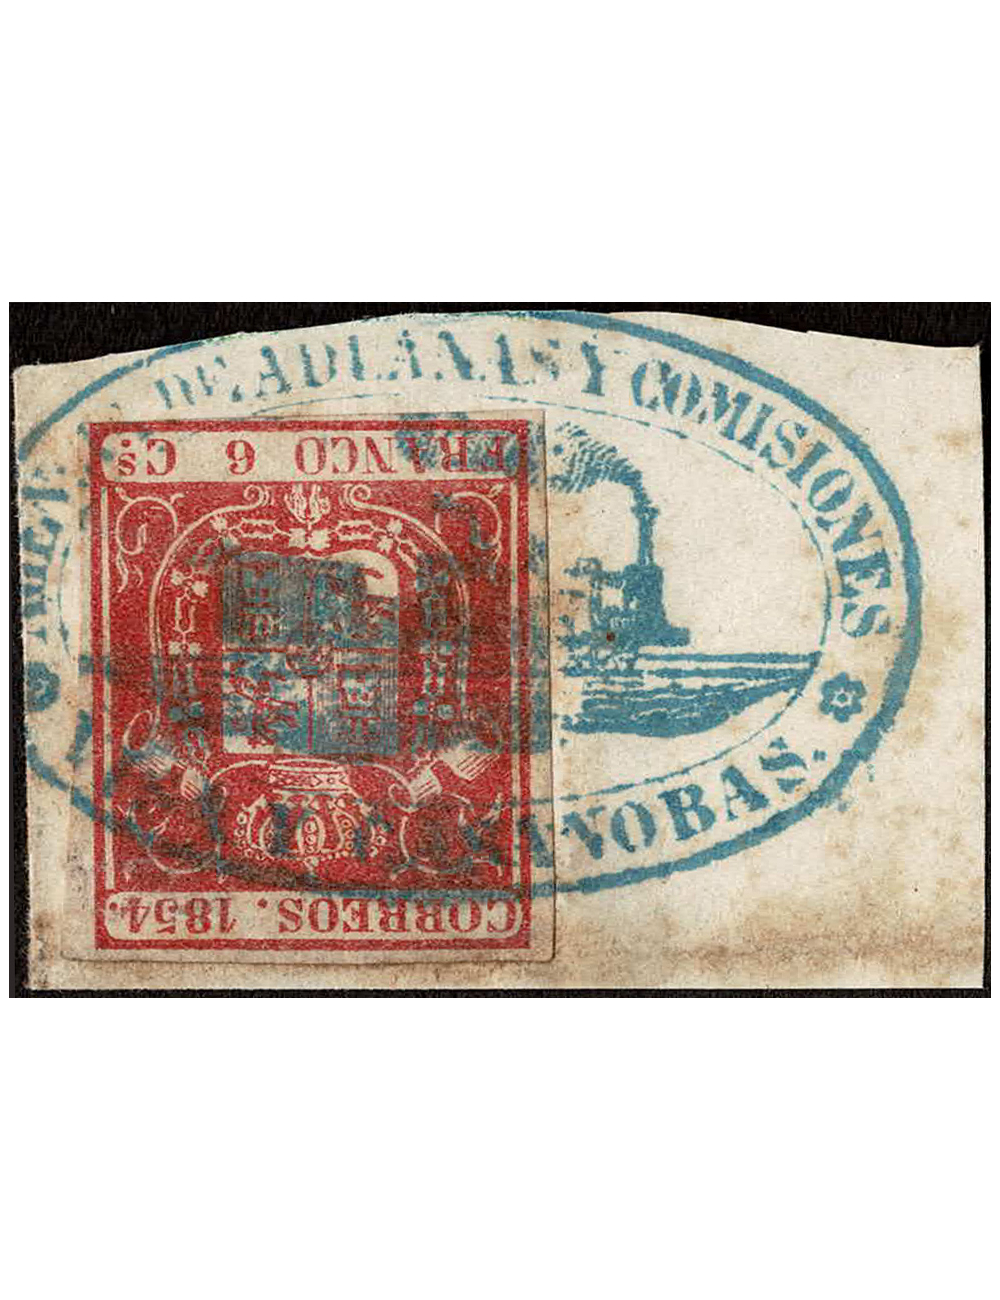 1854. 6 cuartos carmín sobre pequeño fragmento que reproduce toda la marca “VISA Y CASANOBAS” del ferrocarril. Pieza de lujo.